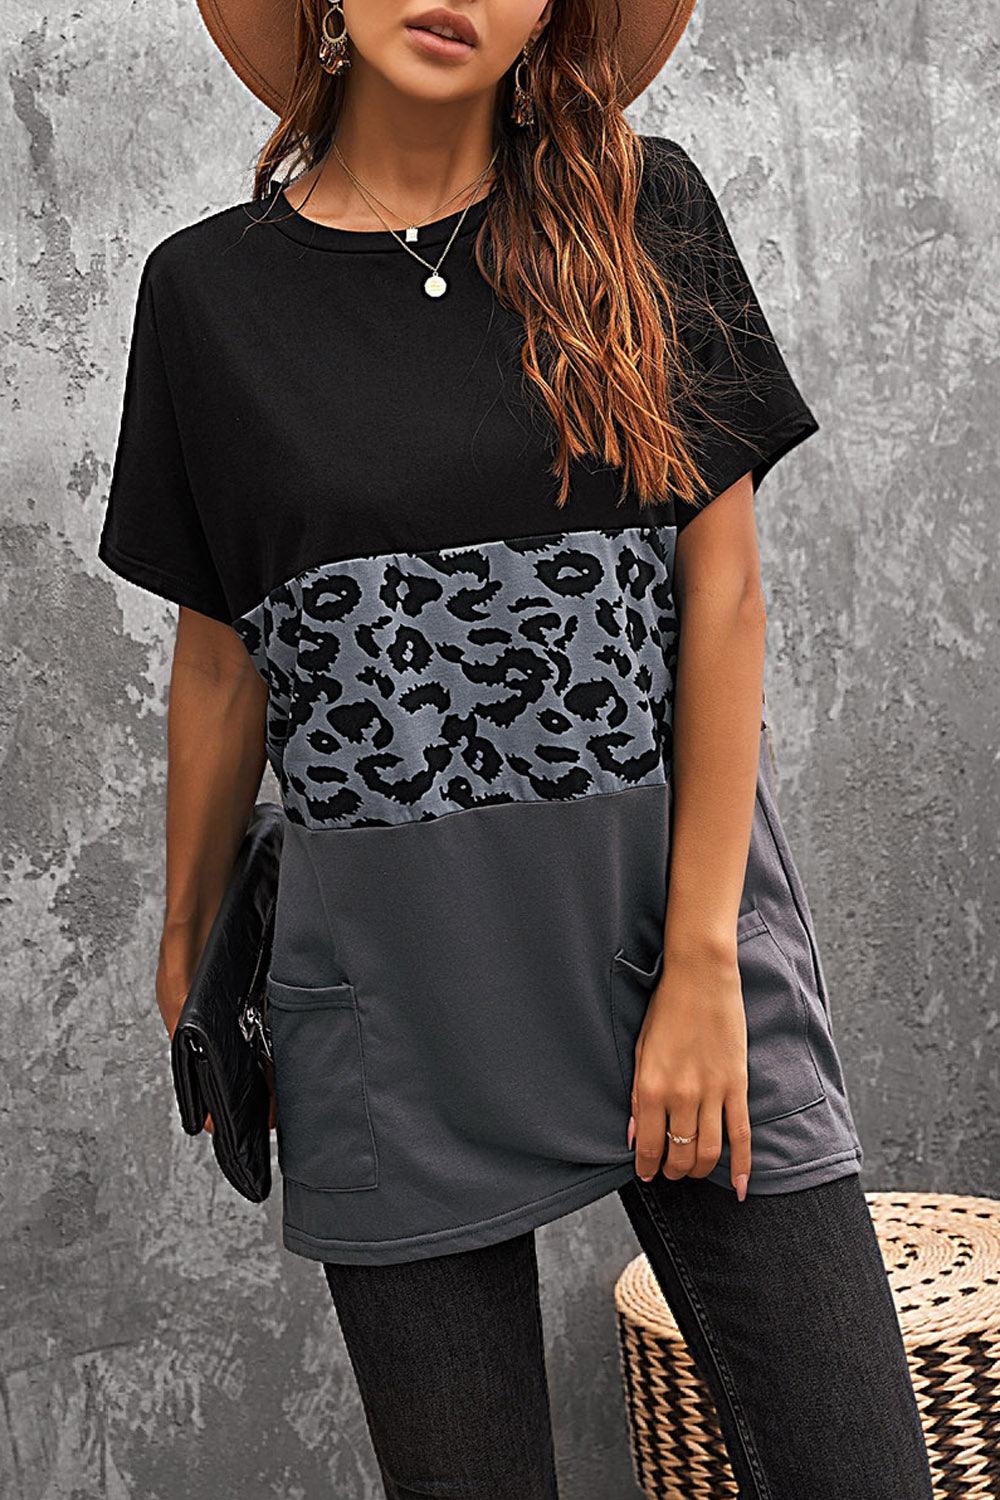 Triple Colorblock Splicing T-shirt Mini with Pockets - L & M Kee, LLC